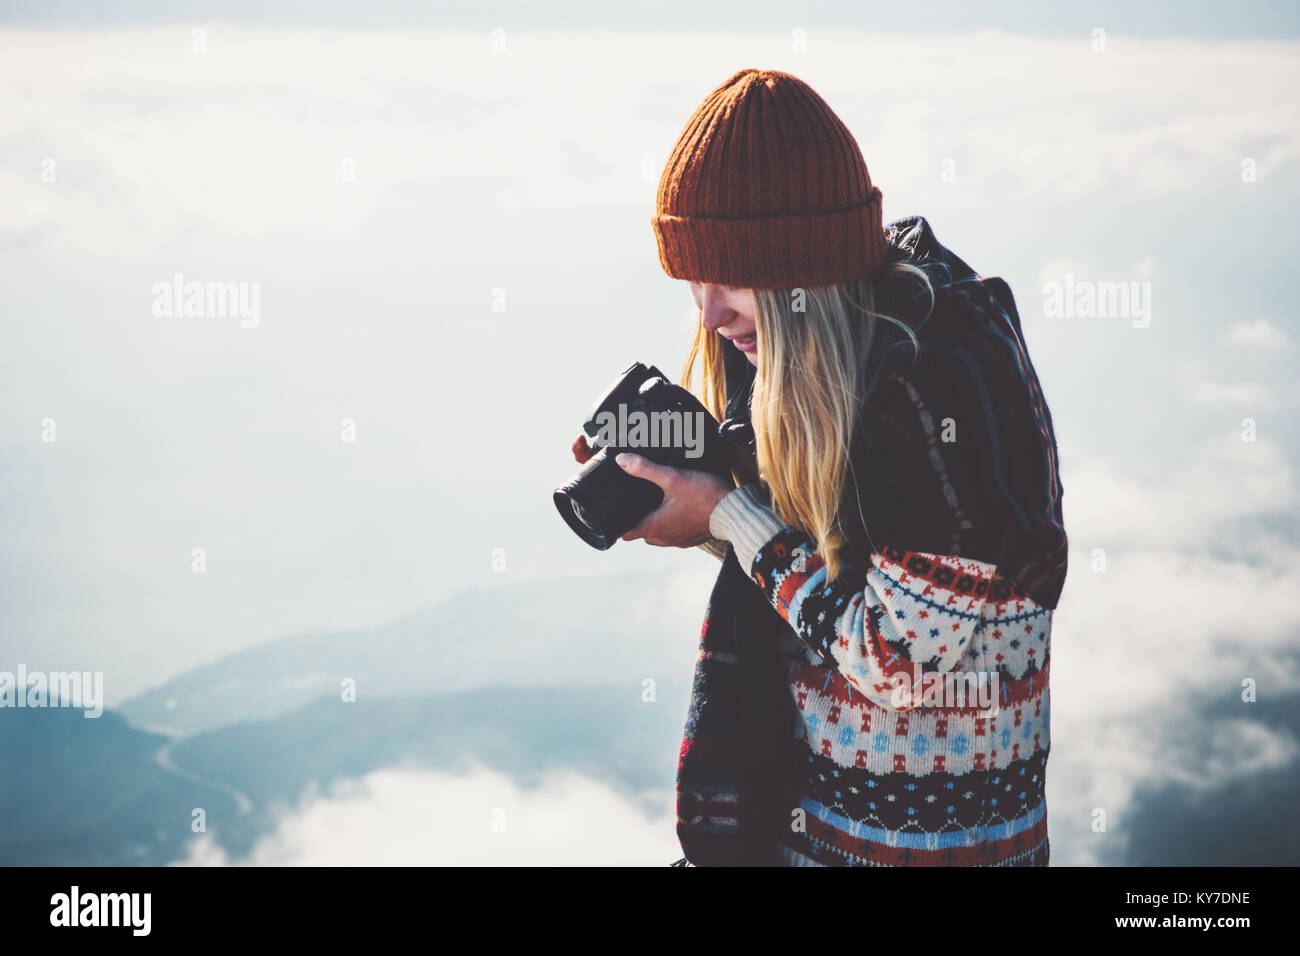 Donna fotografo con fotocamera foto nebbiose Montagne Paesaggio nuvole sullo sfondo stile di vita viaggio avventura concetto vacanze outdoor Foto Stock